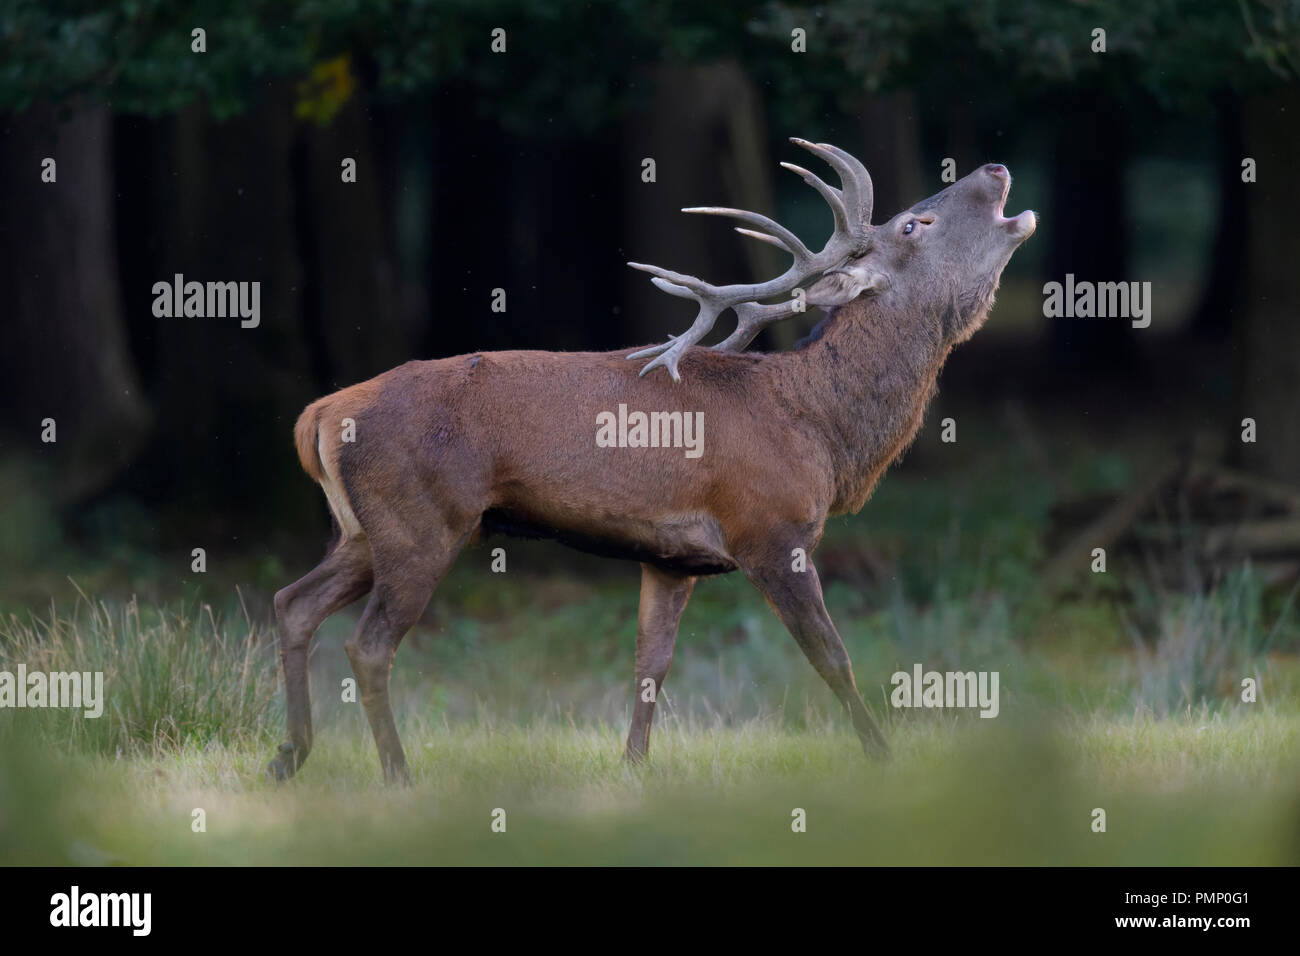 Red Deer, Cervus elaphus, Rutting Season, Roaring, Germany, Europe Stock Photo